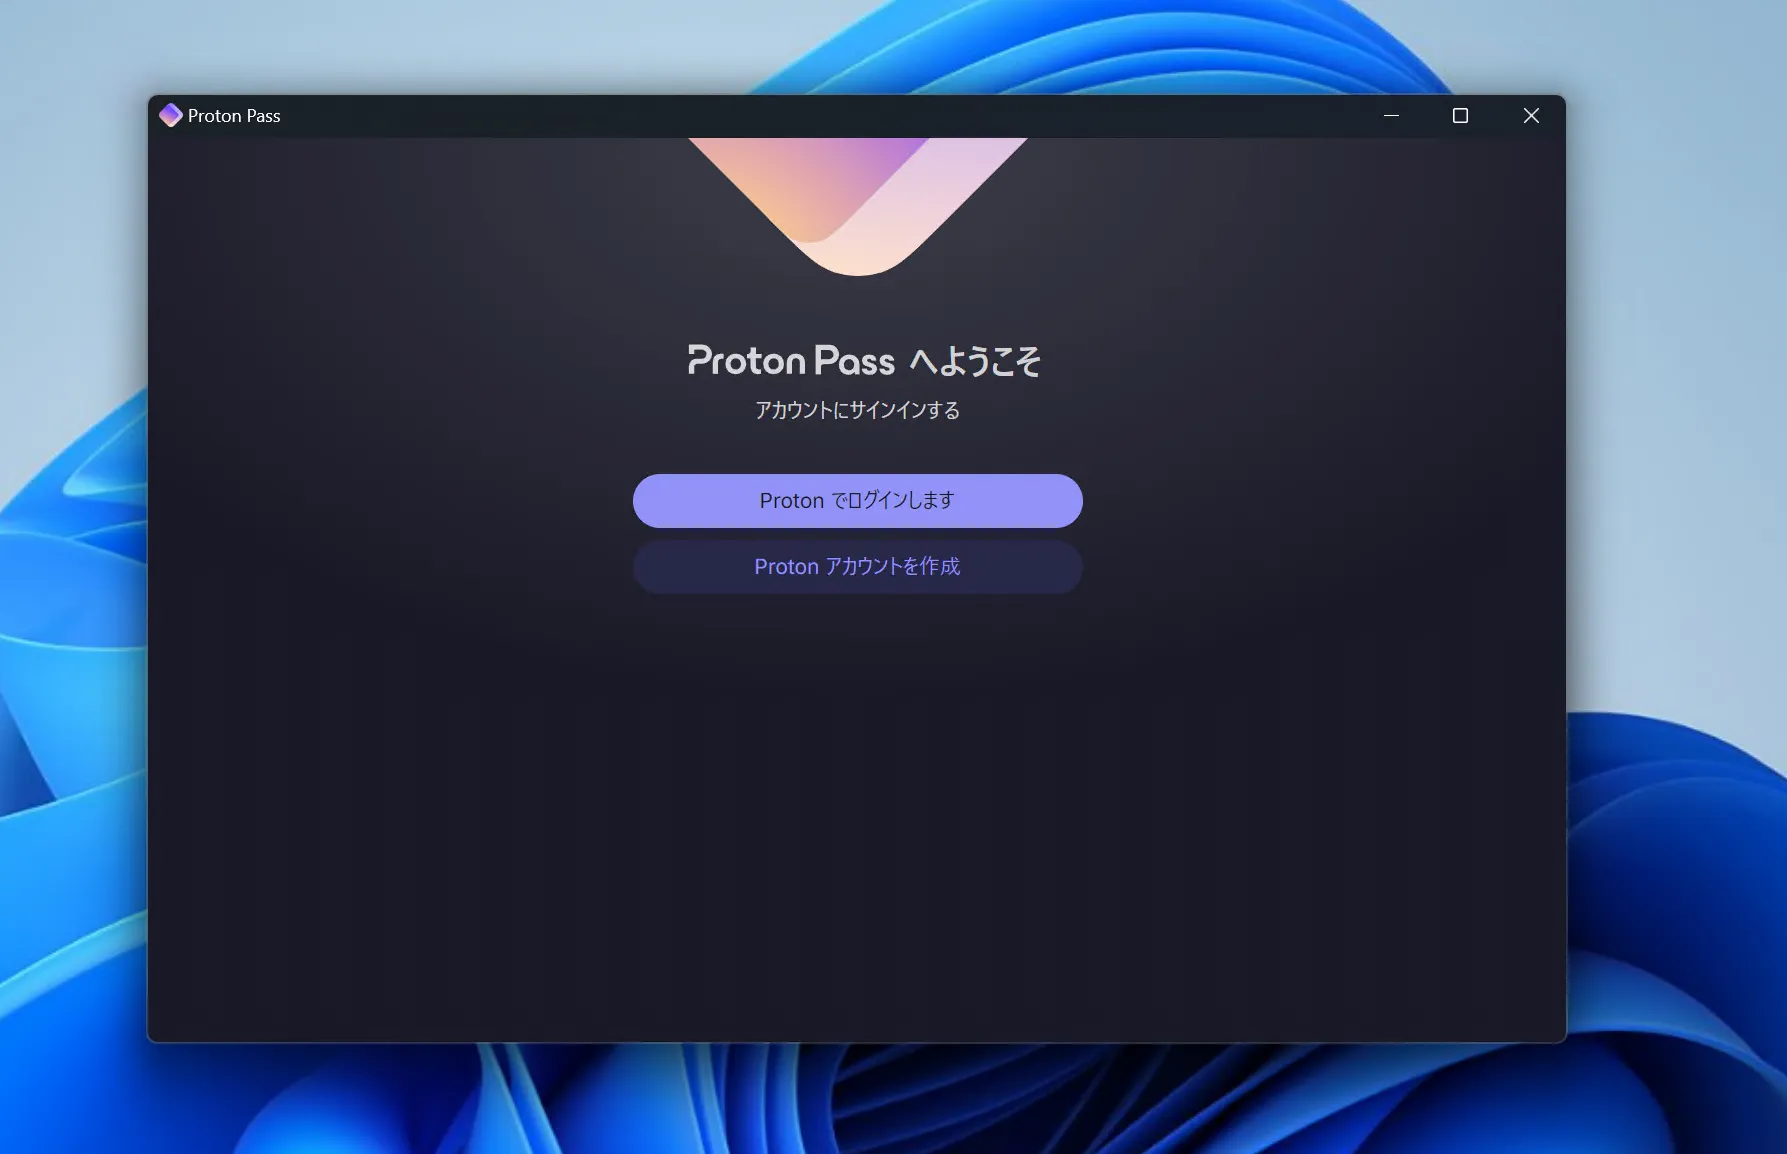 Proton Passのログイン画面のスクリーンショット。画面中央に［Proton Passへようこそ］と書かれており、その下に［アカウントにサインインする］と書かれている。また、さらにその下にはログインボタンとアカウントの作成ボタンが配置されている